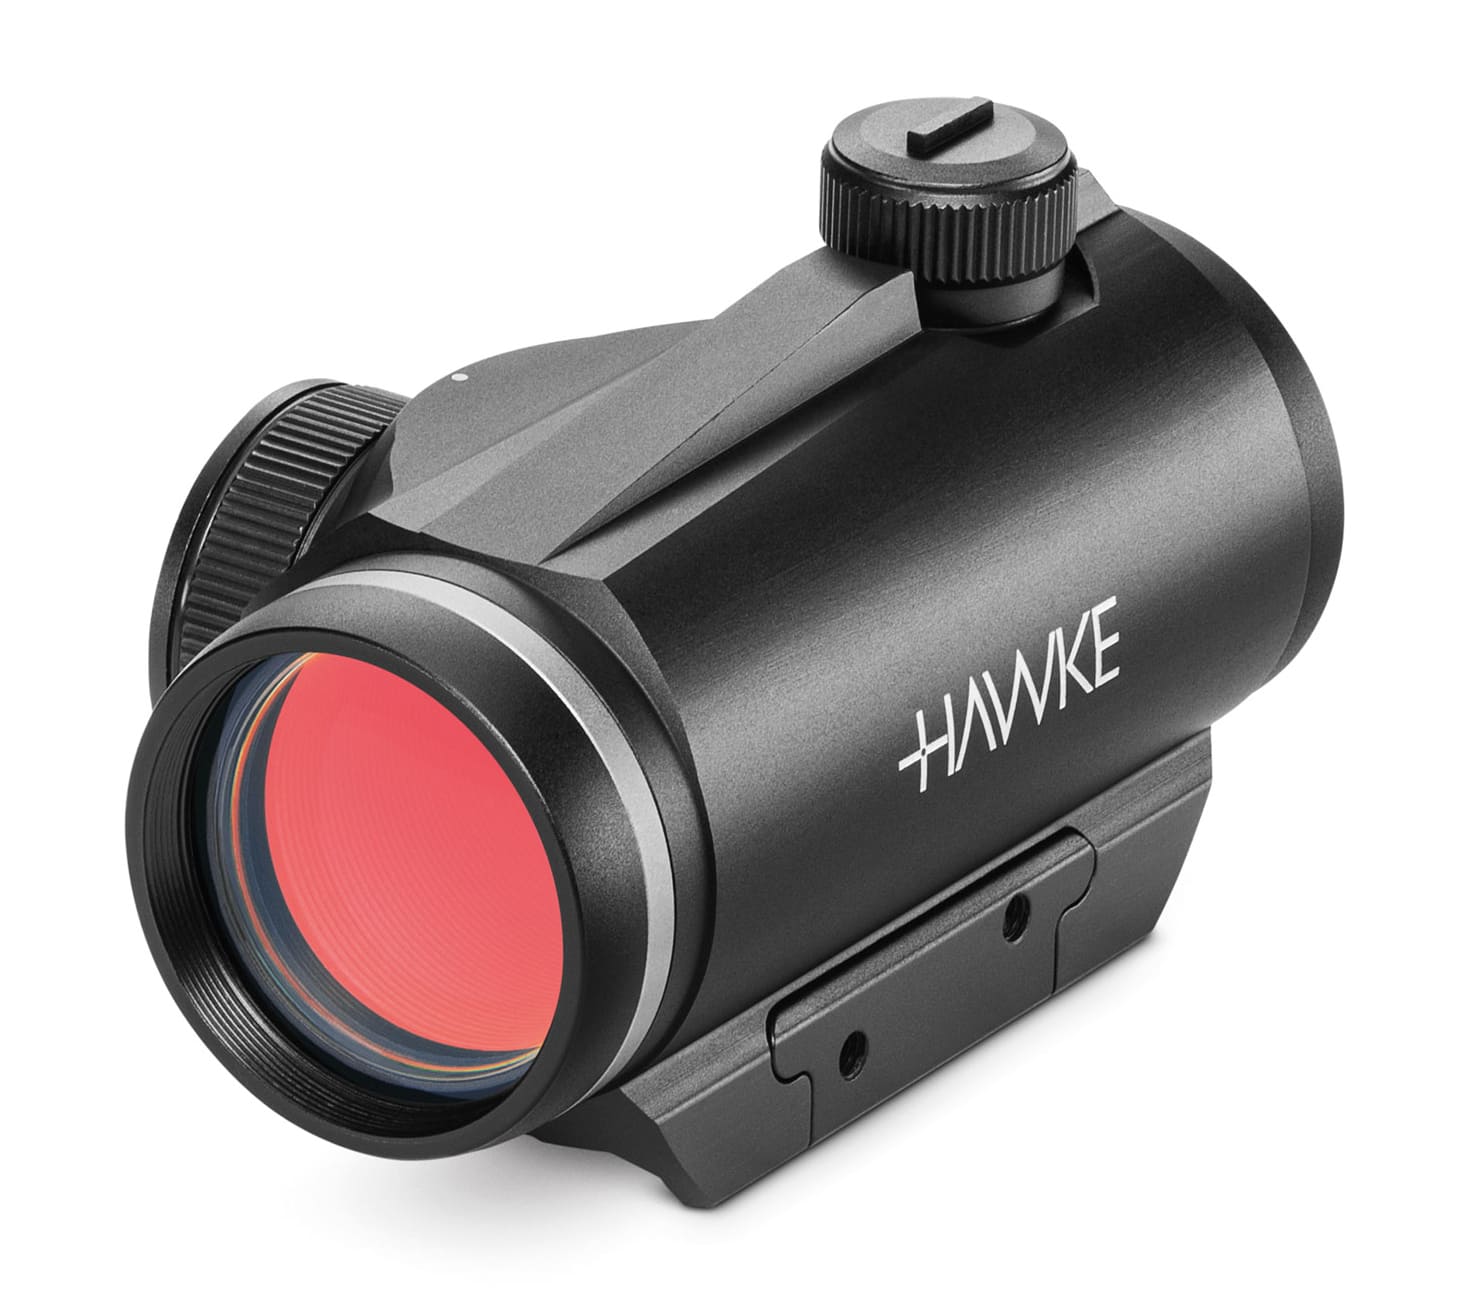 hawke vantage 1x30 rotpunktvisier reddot objektiv 12104 für Weaver und Picatinnyschiene